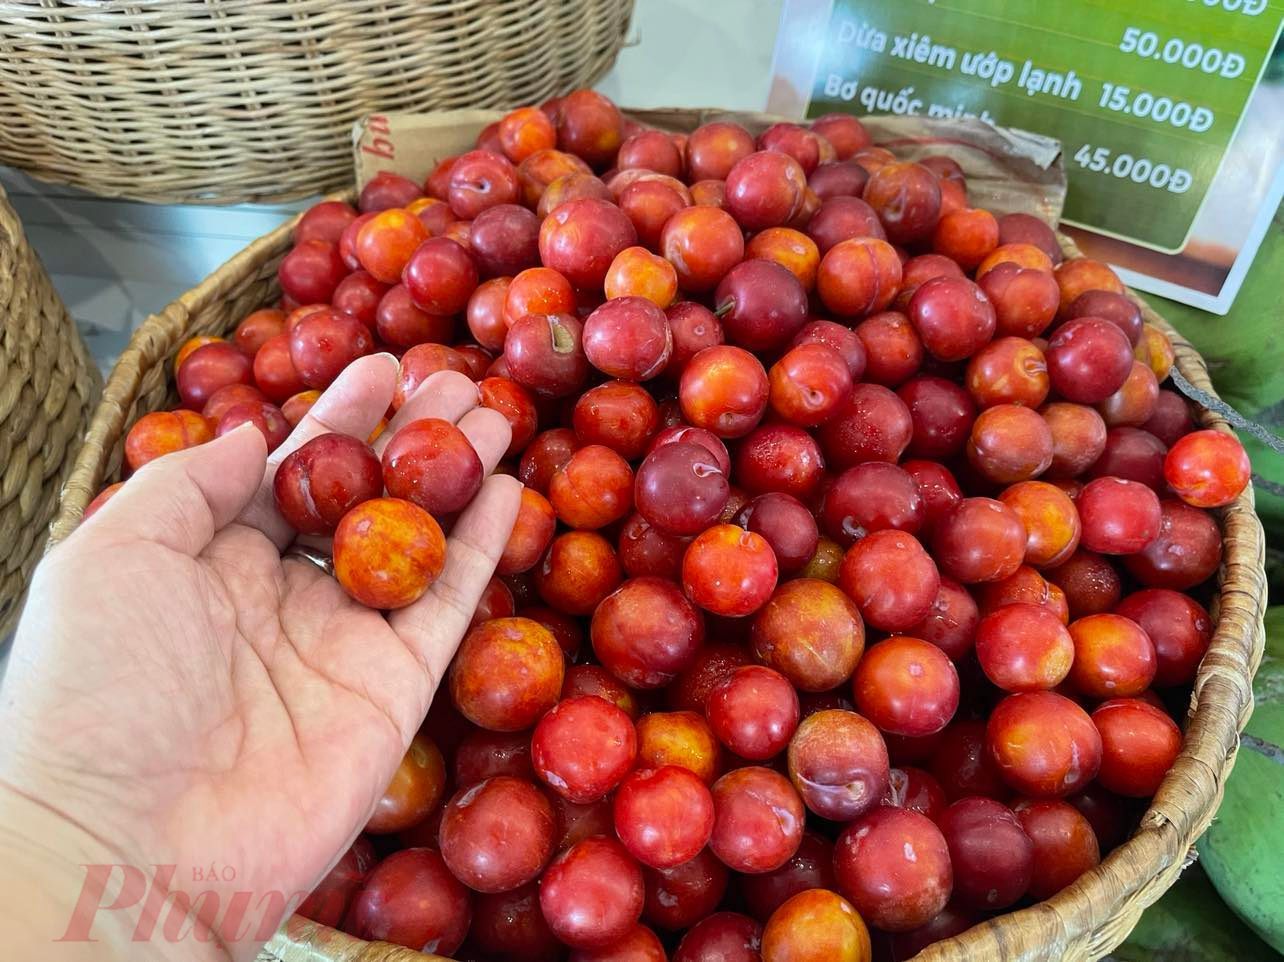 Mận Cherry  là đặc sản Sơn La với vị ngọt nhẹ, mọng nước cũng được nhiều khách chuộng; giá 35.000 đồng/kg. Khách tham quan mua nhiều gửi lại tử lạnh gian hàng bảo quản giúp - Ảnh: Nguyễn Cẩm